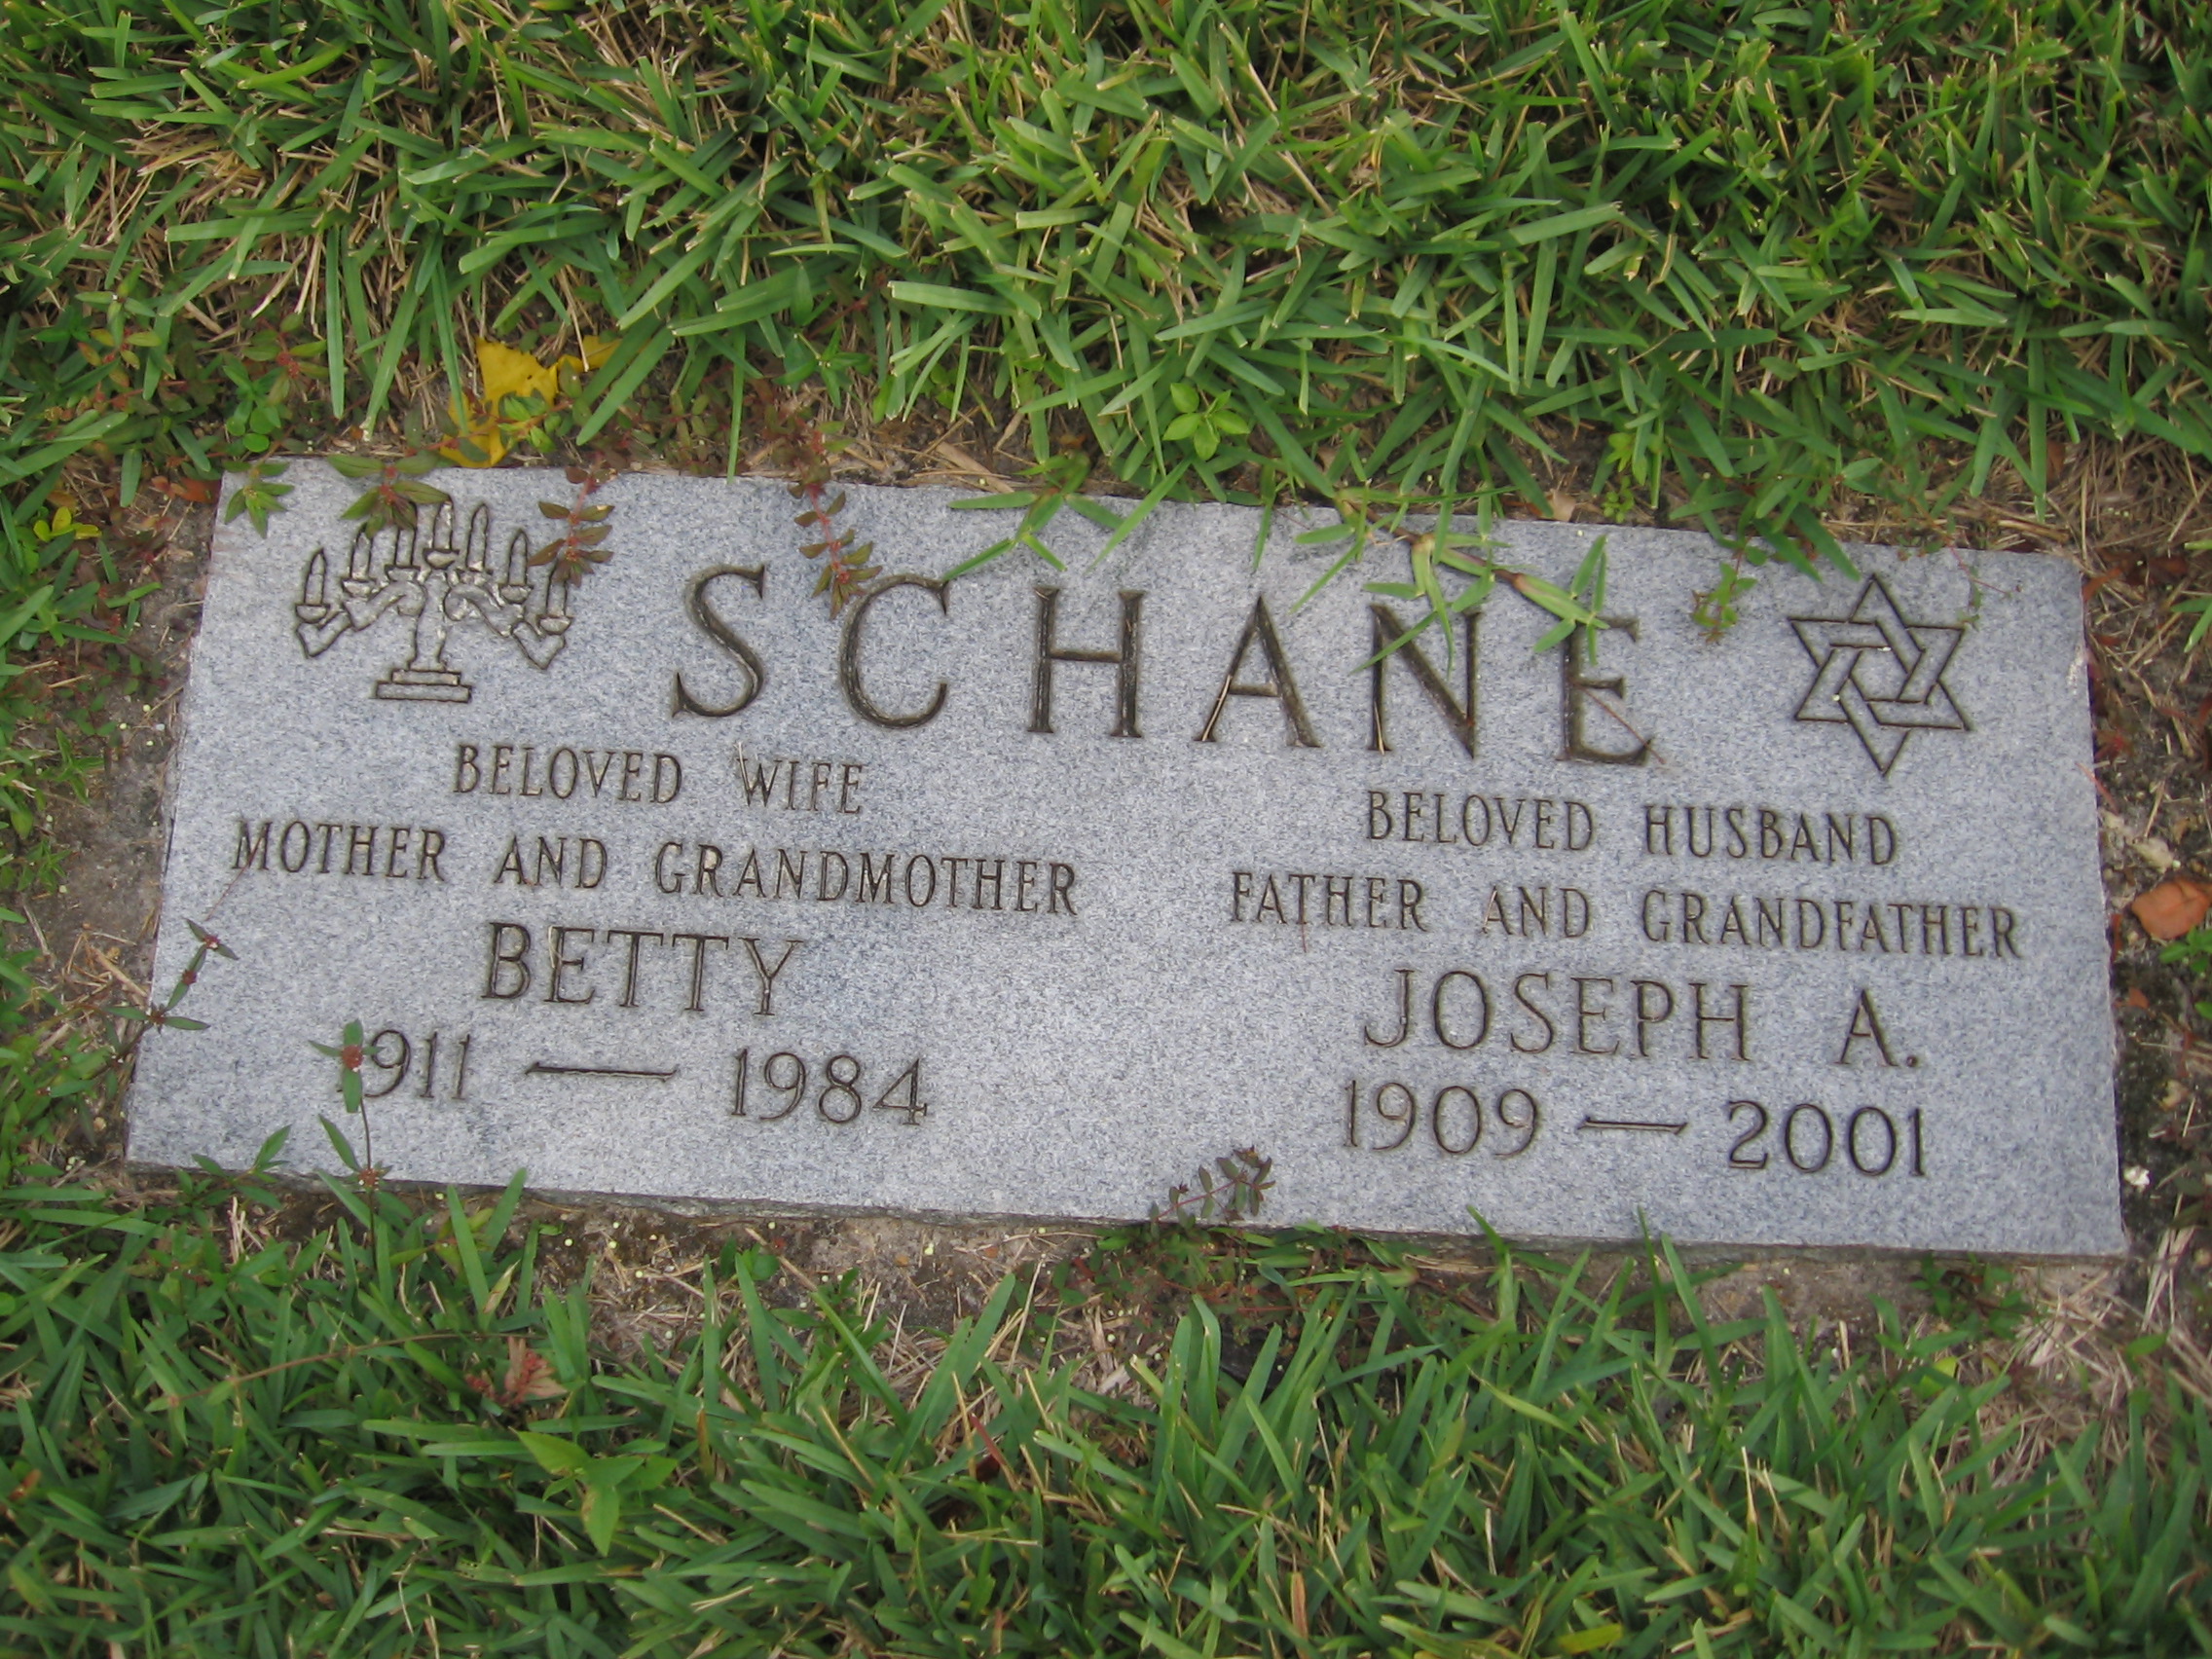 Joseph A Schane